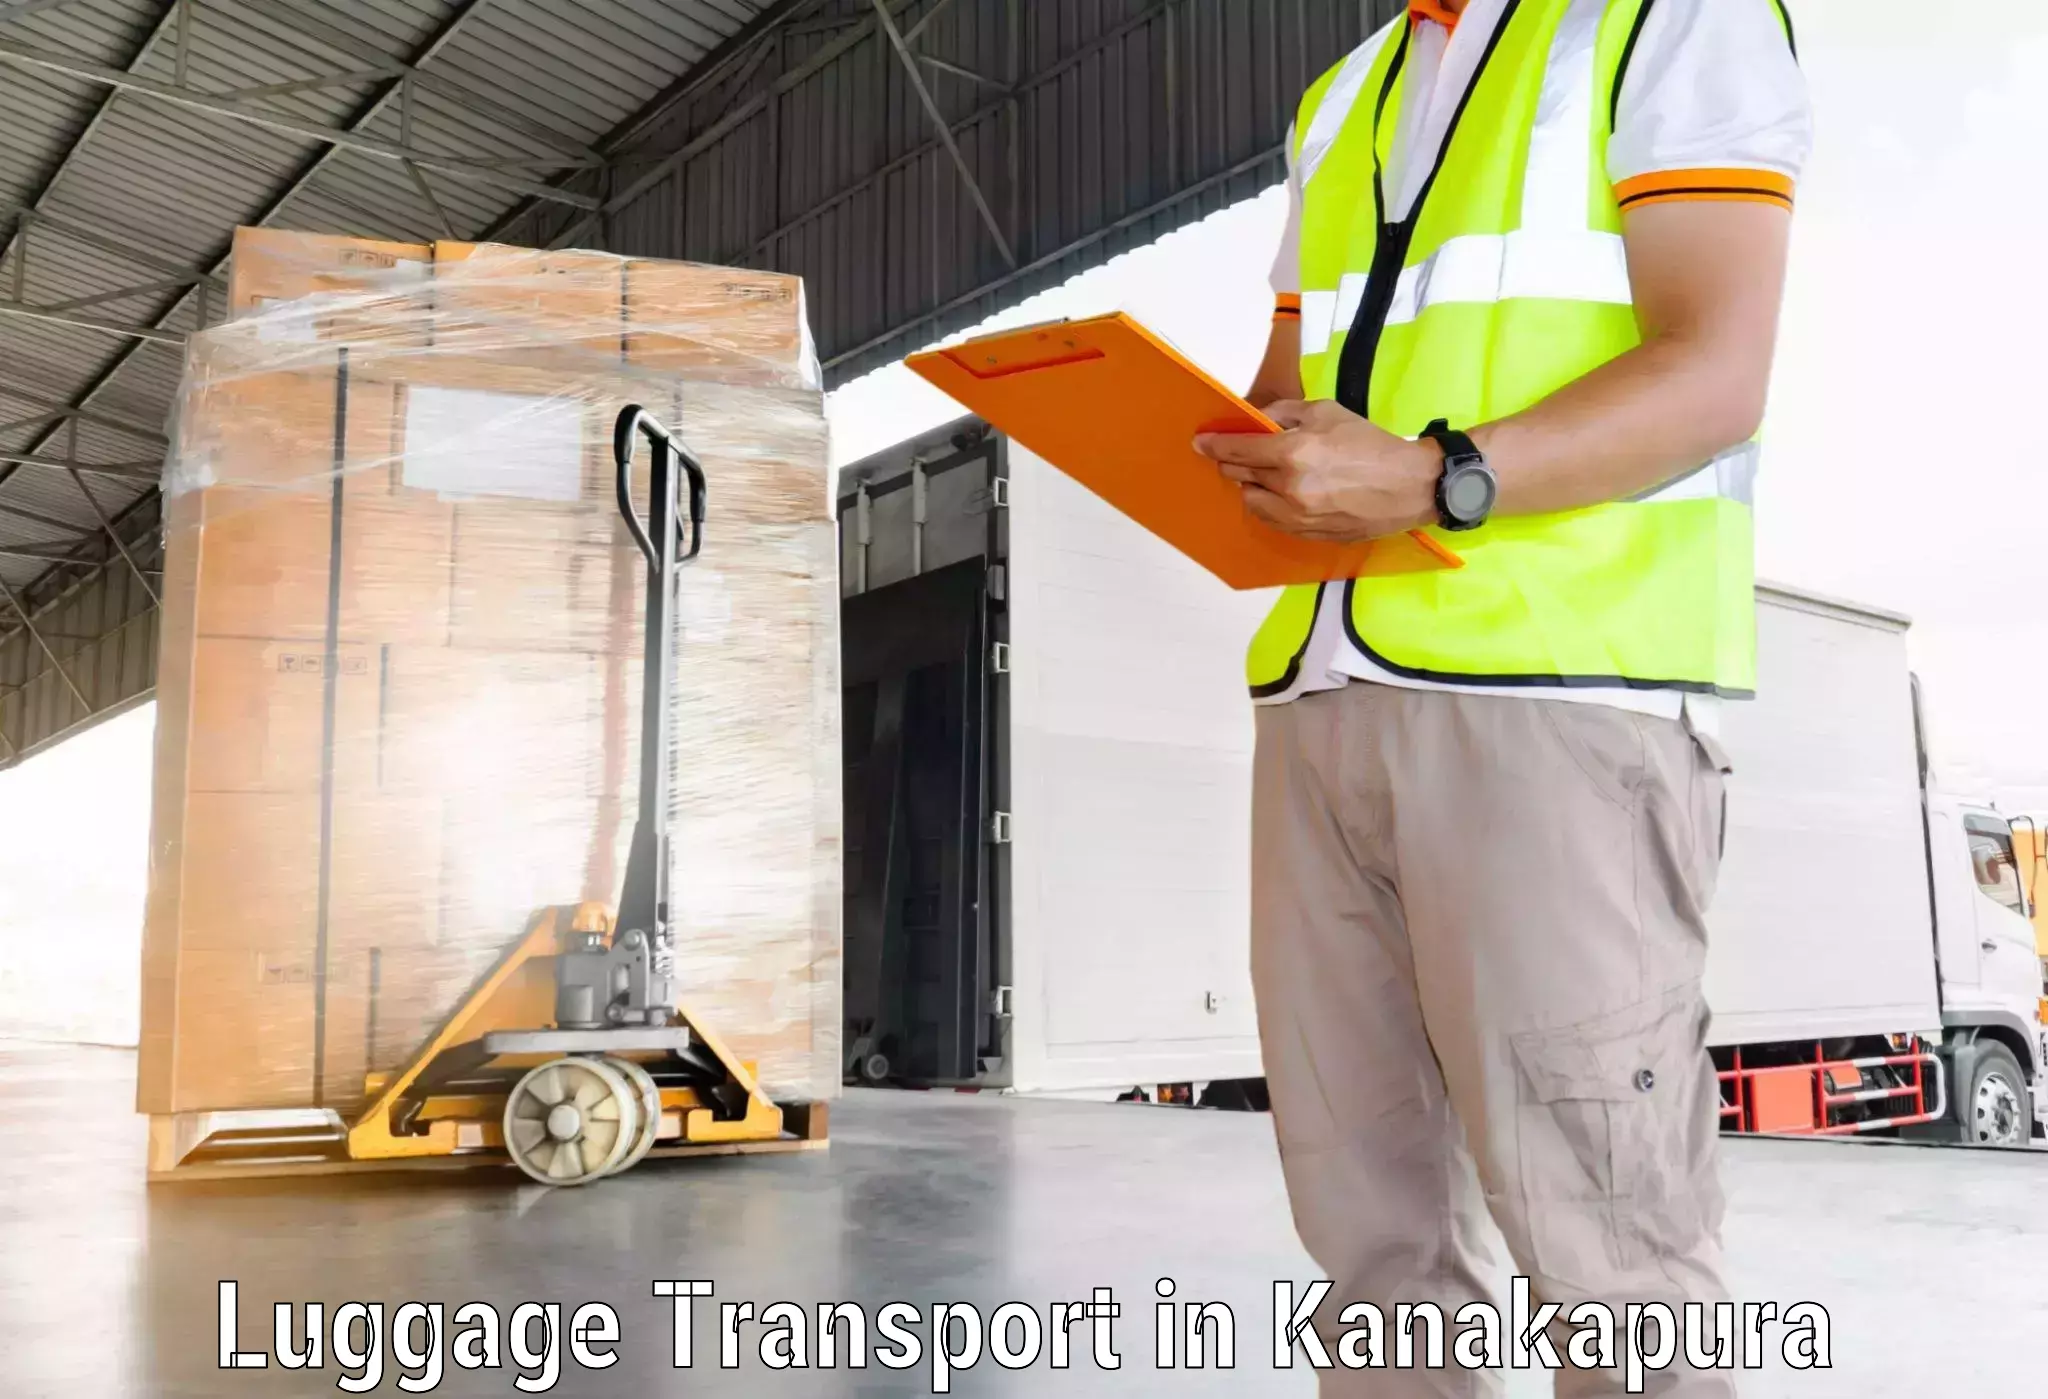 Baggage transport innovation in Kanakapura